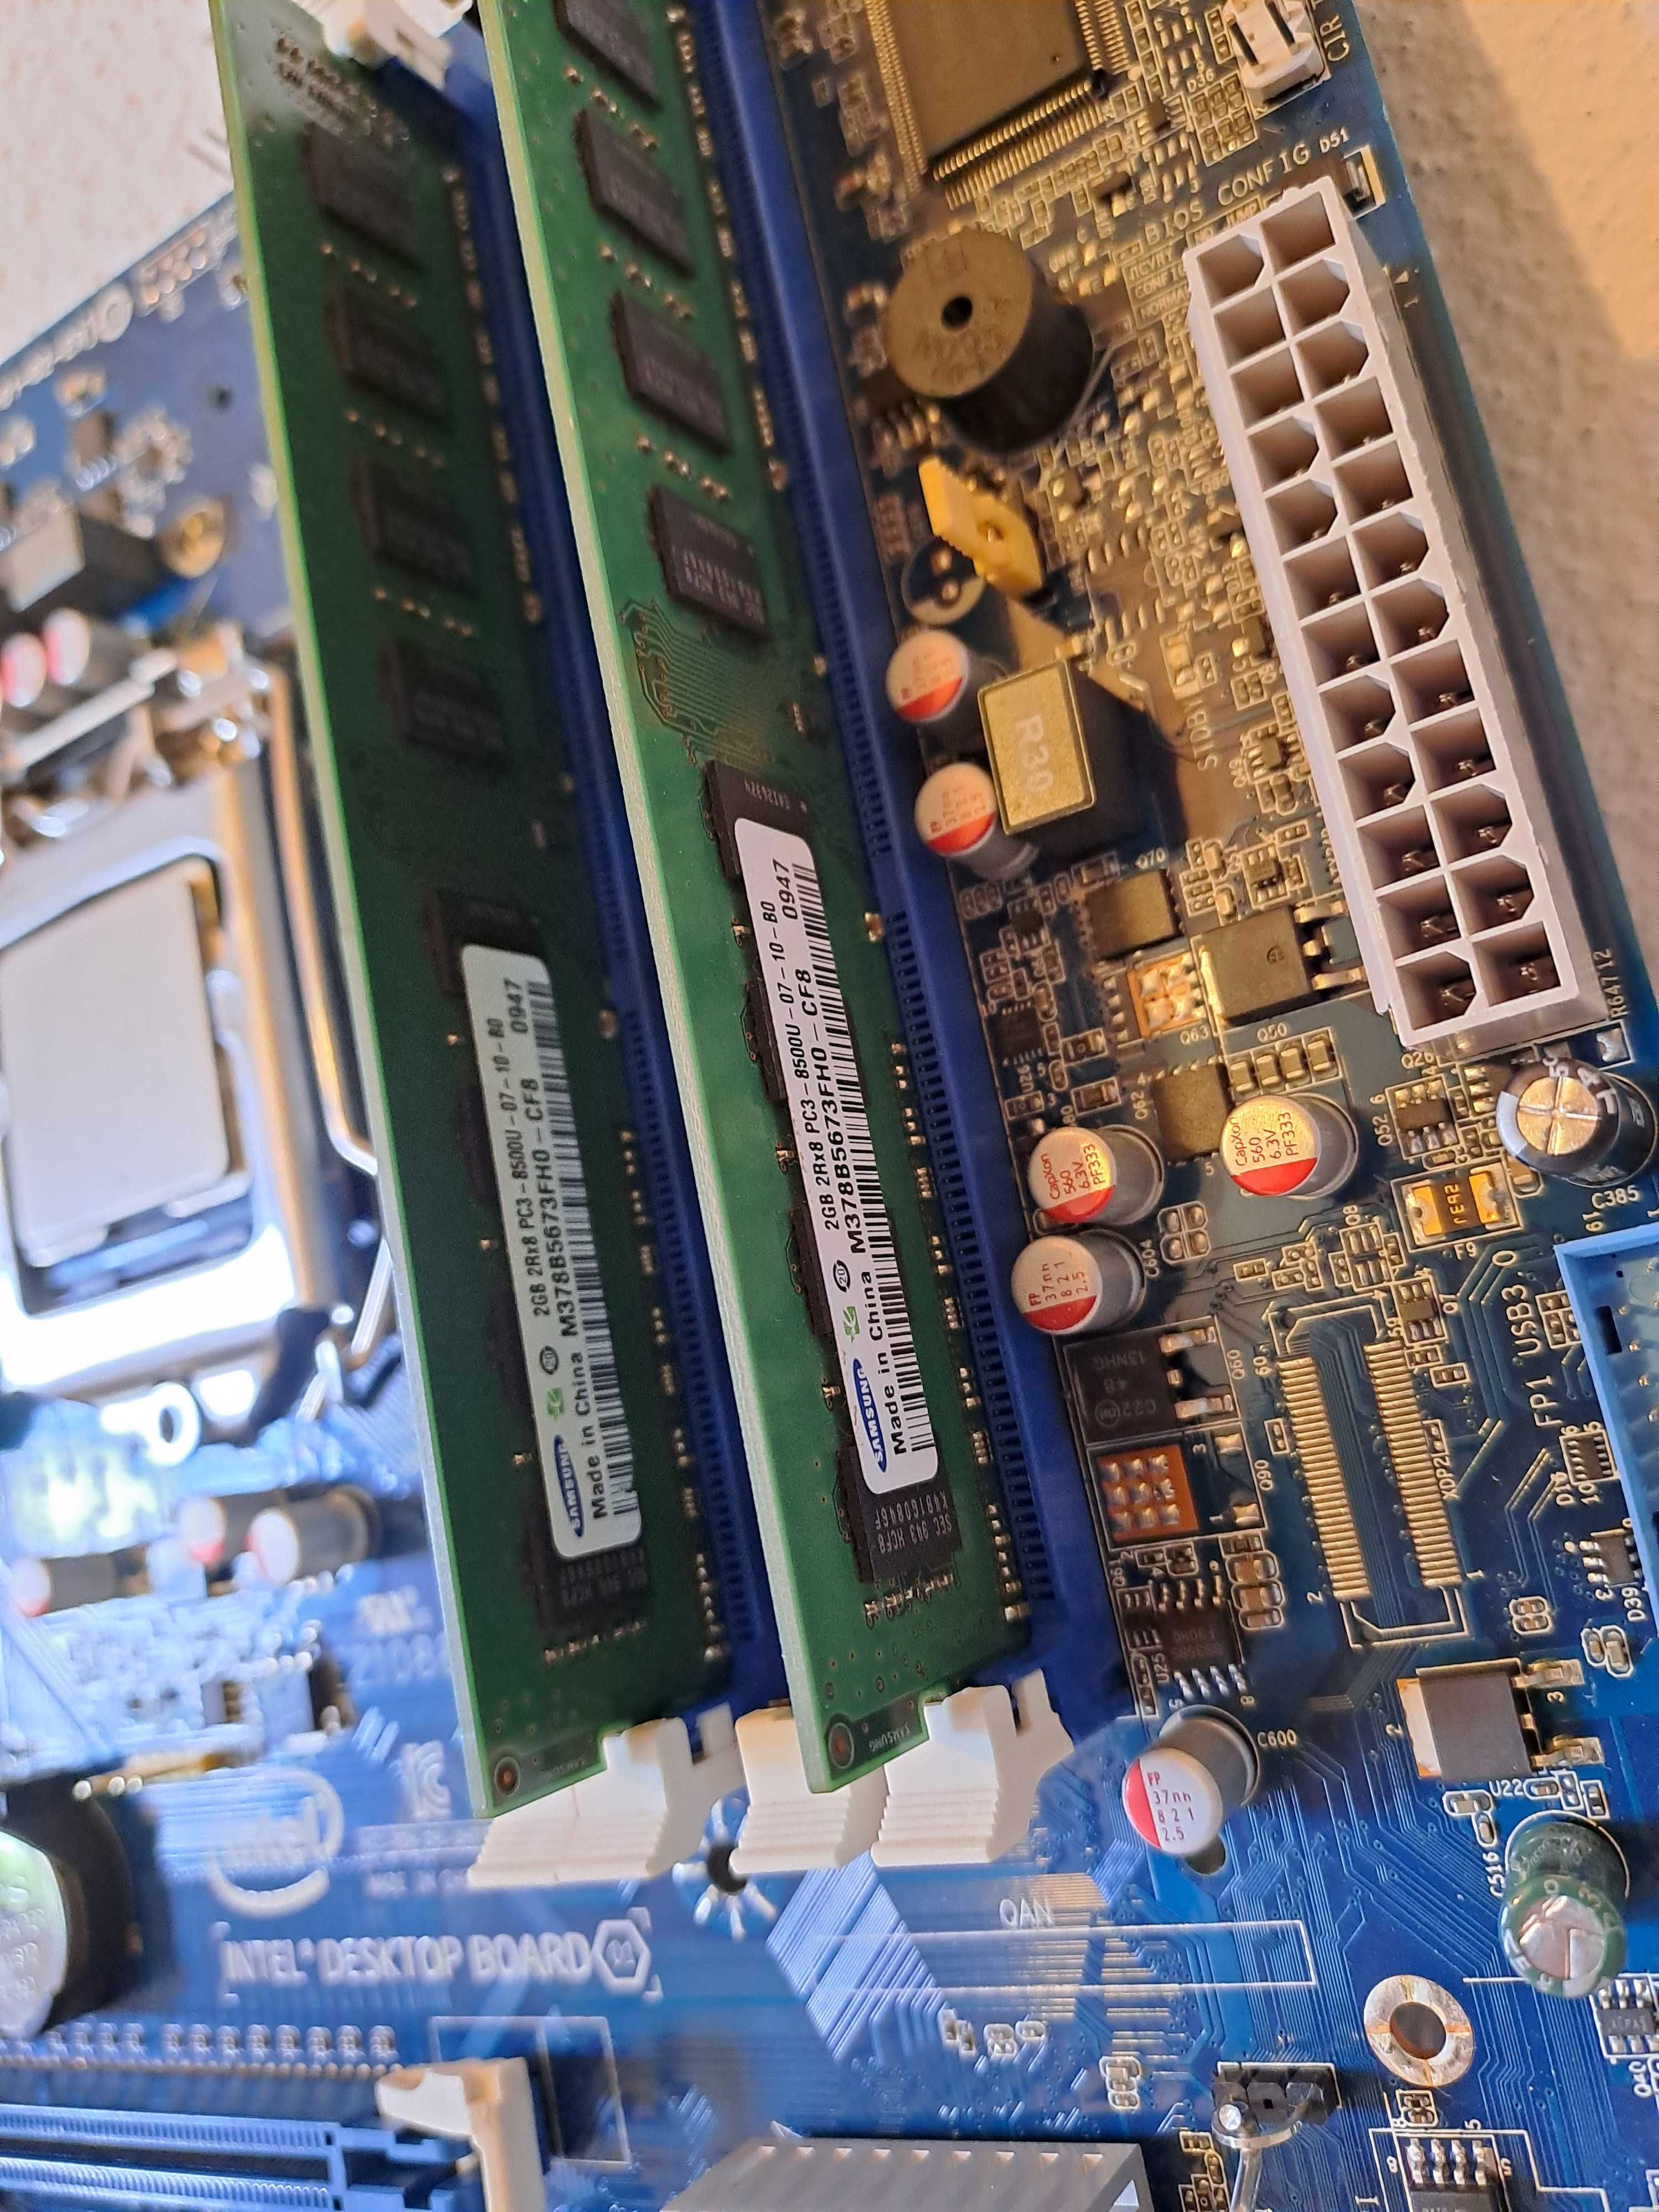 Bundle Core i5-2500 / Board Intel DH77EB / 4GB DDR3 Samsung